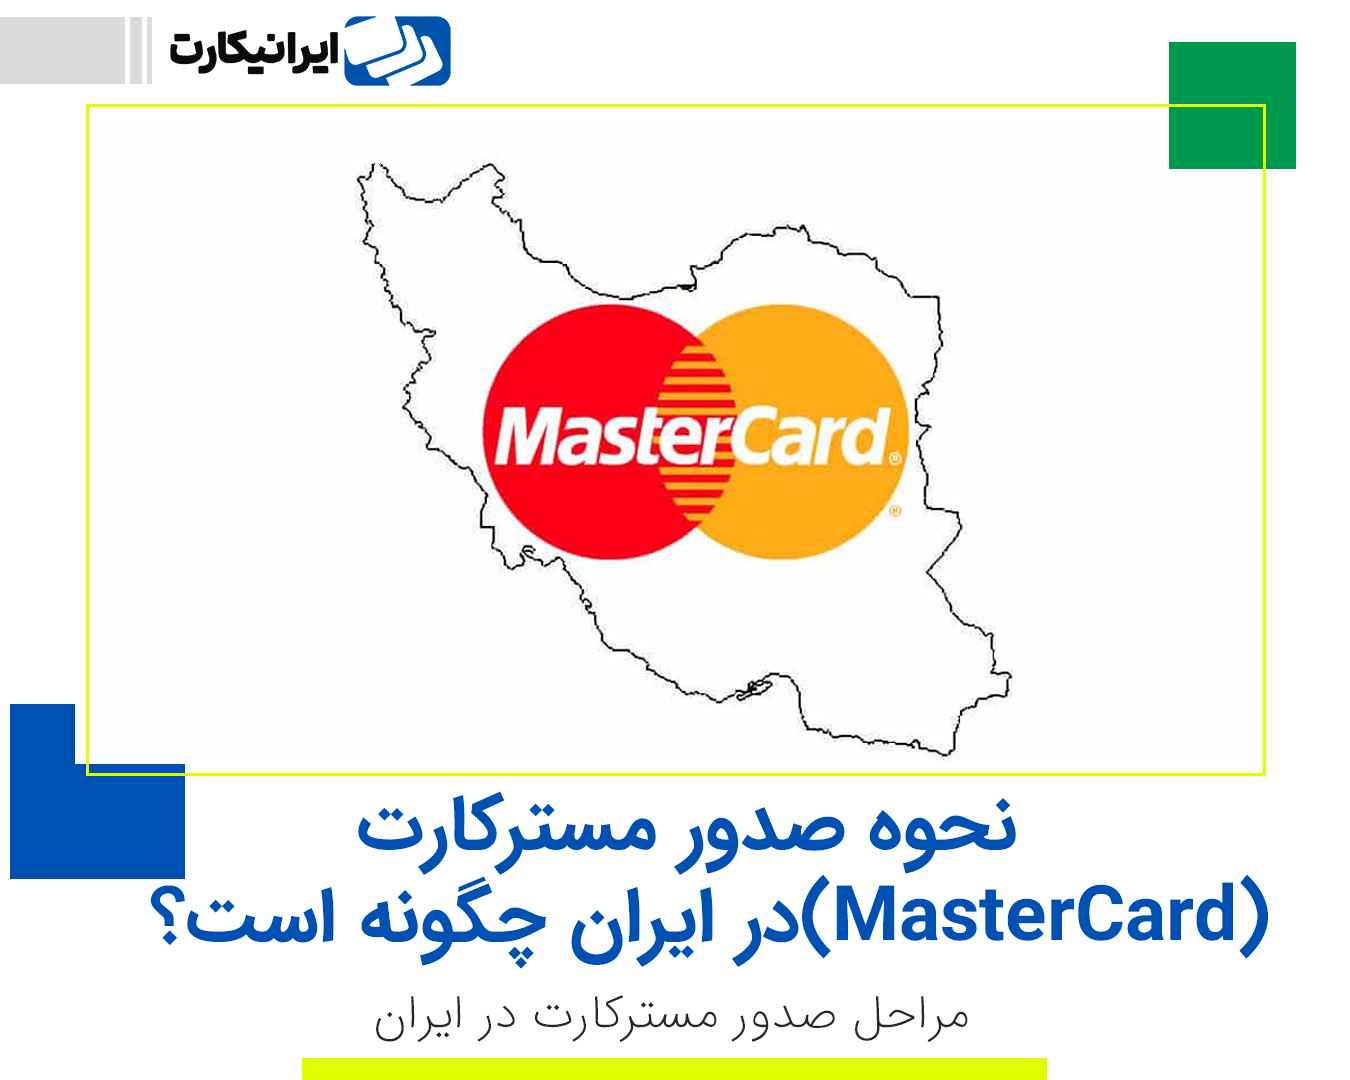 نحوه صدور مسترکارت (MasterCard) در ایران چگونه است؟